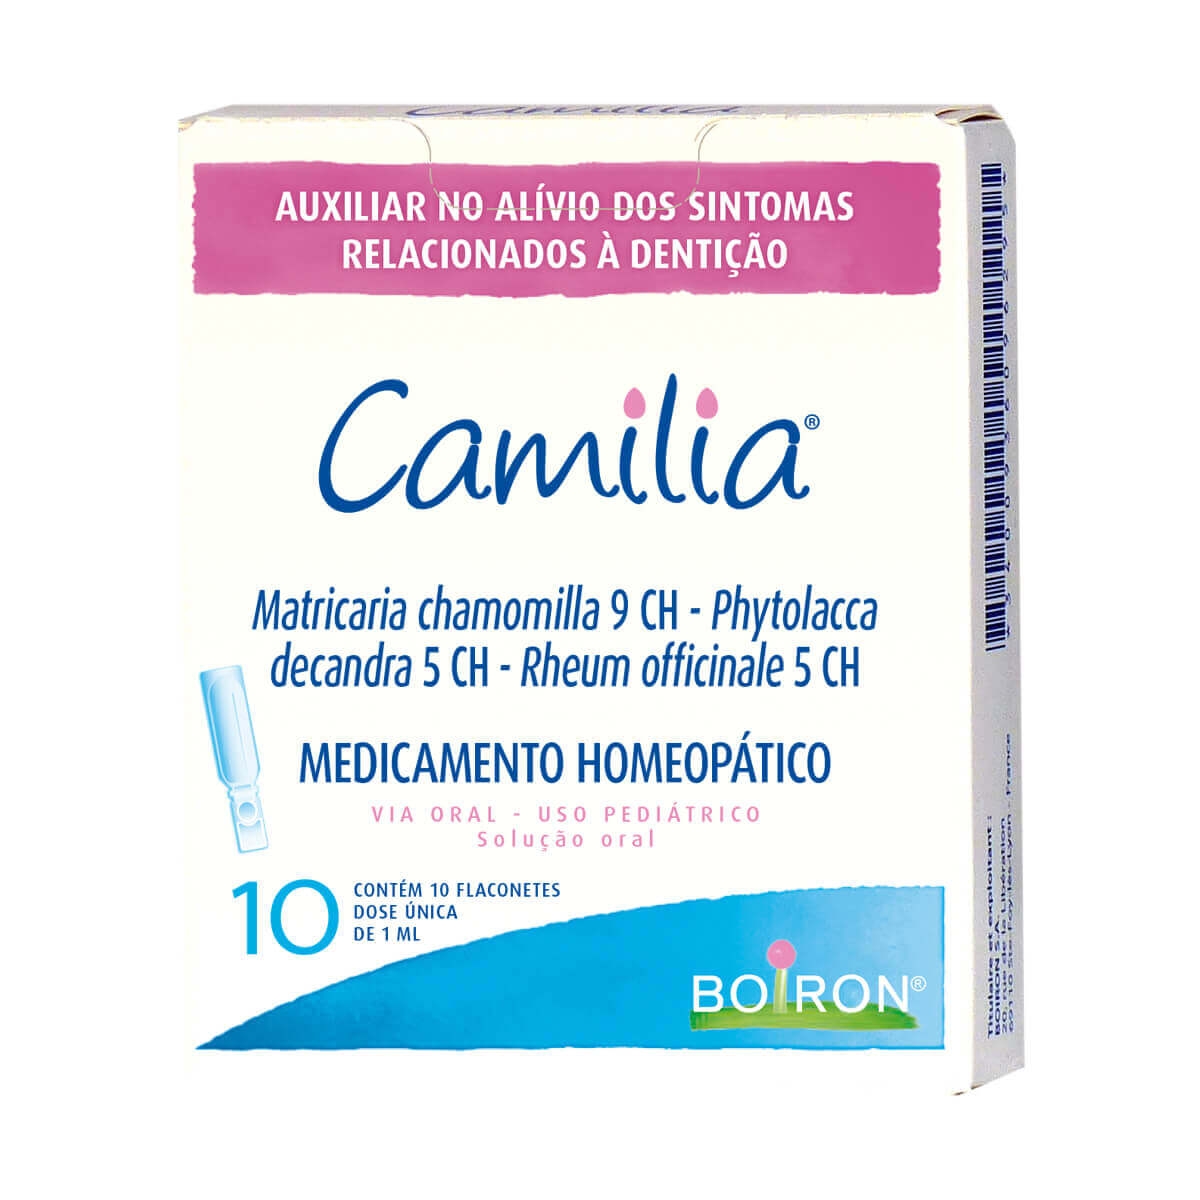 Camilia Matricaria Chamomila 9CH+ Phytolacca Decandra 5CH + Rheum Officinale 5CH Solução Oral 10 flaconetes de 1ml